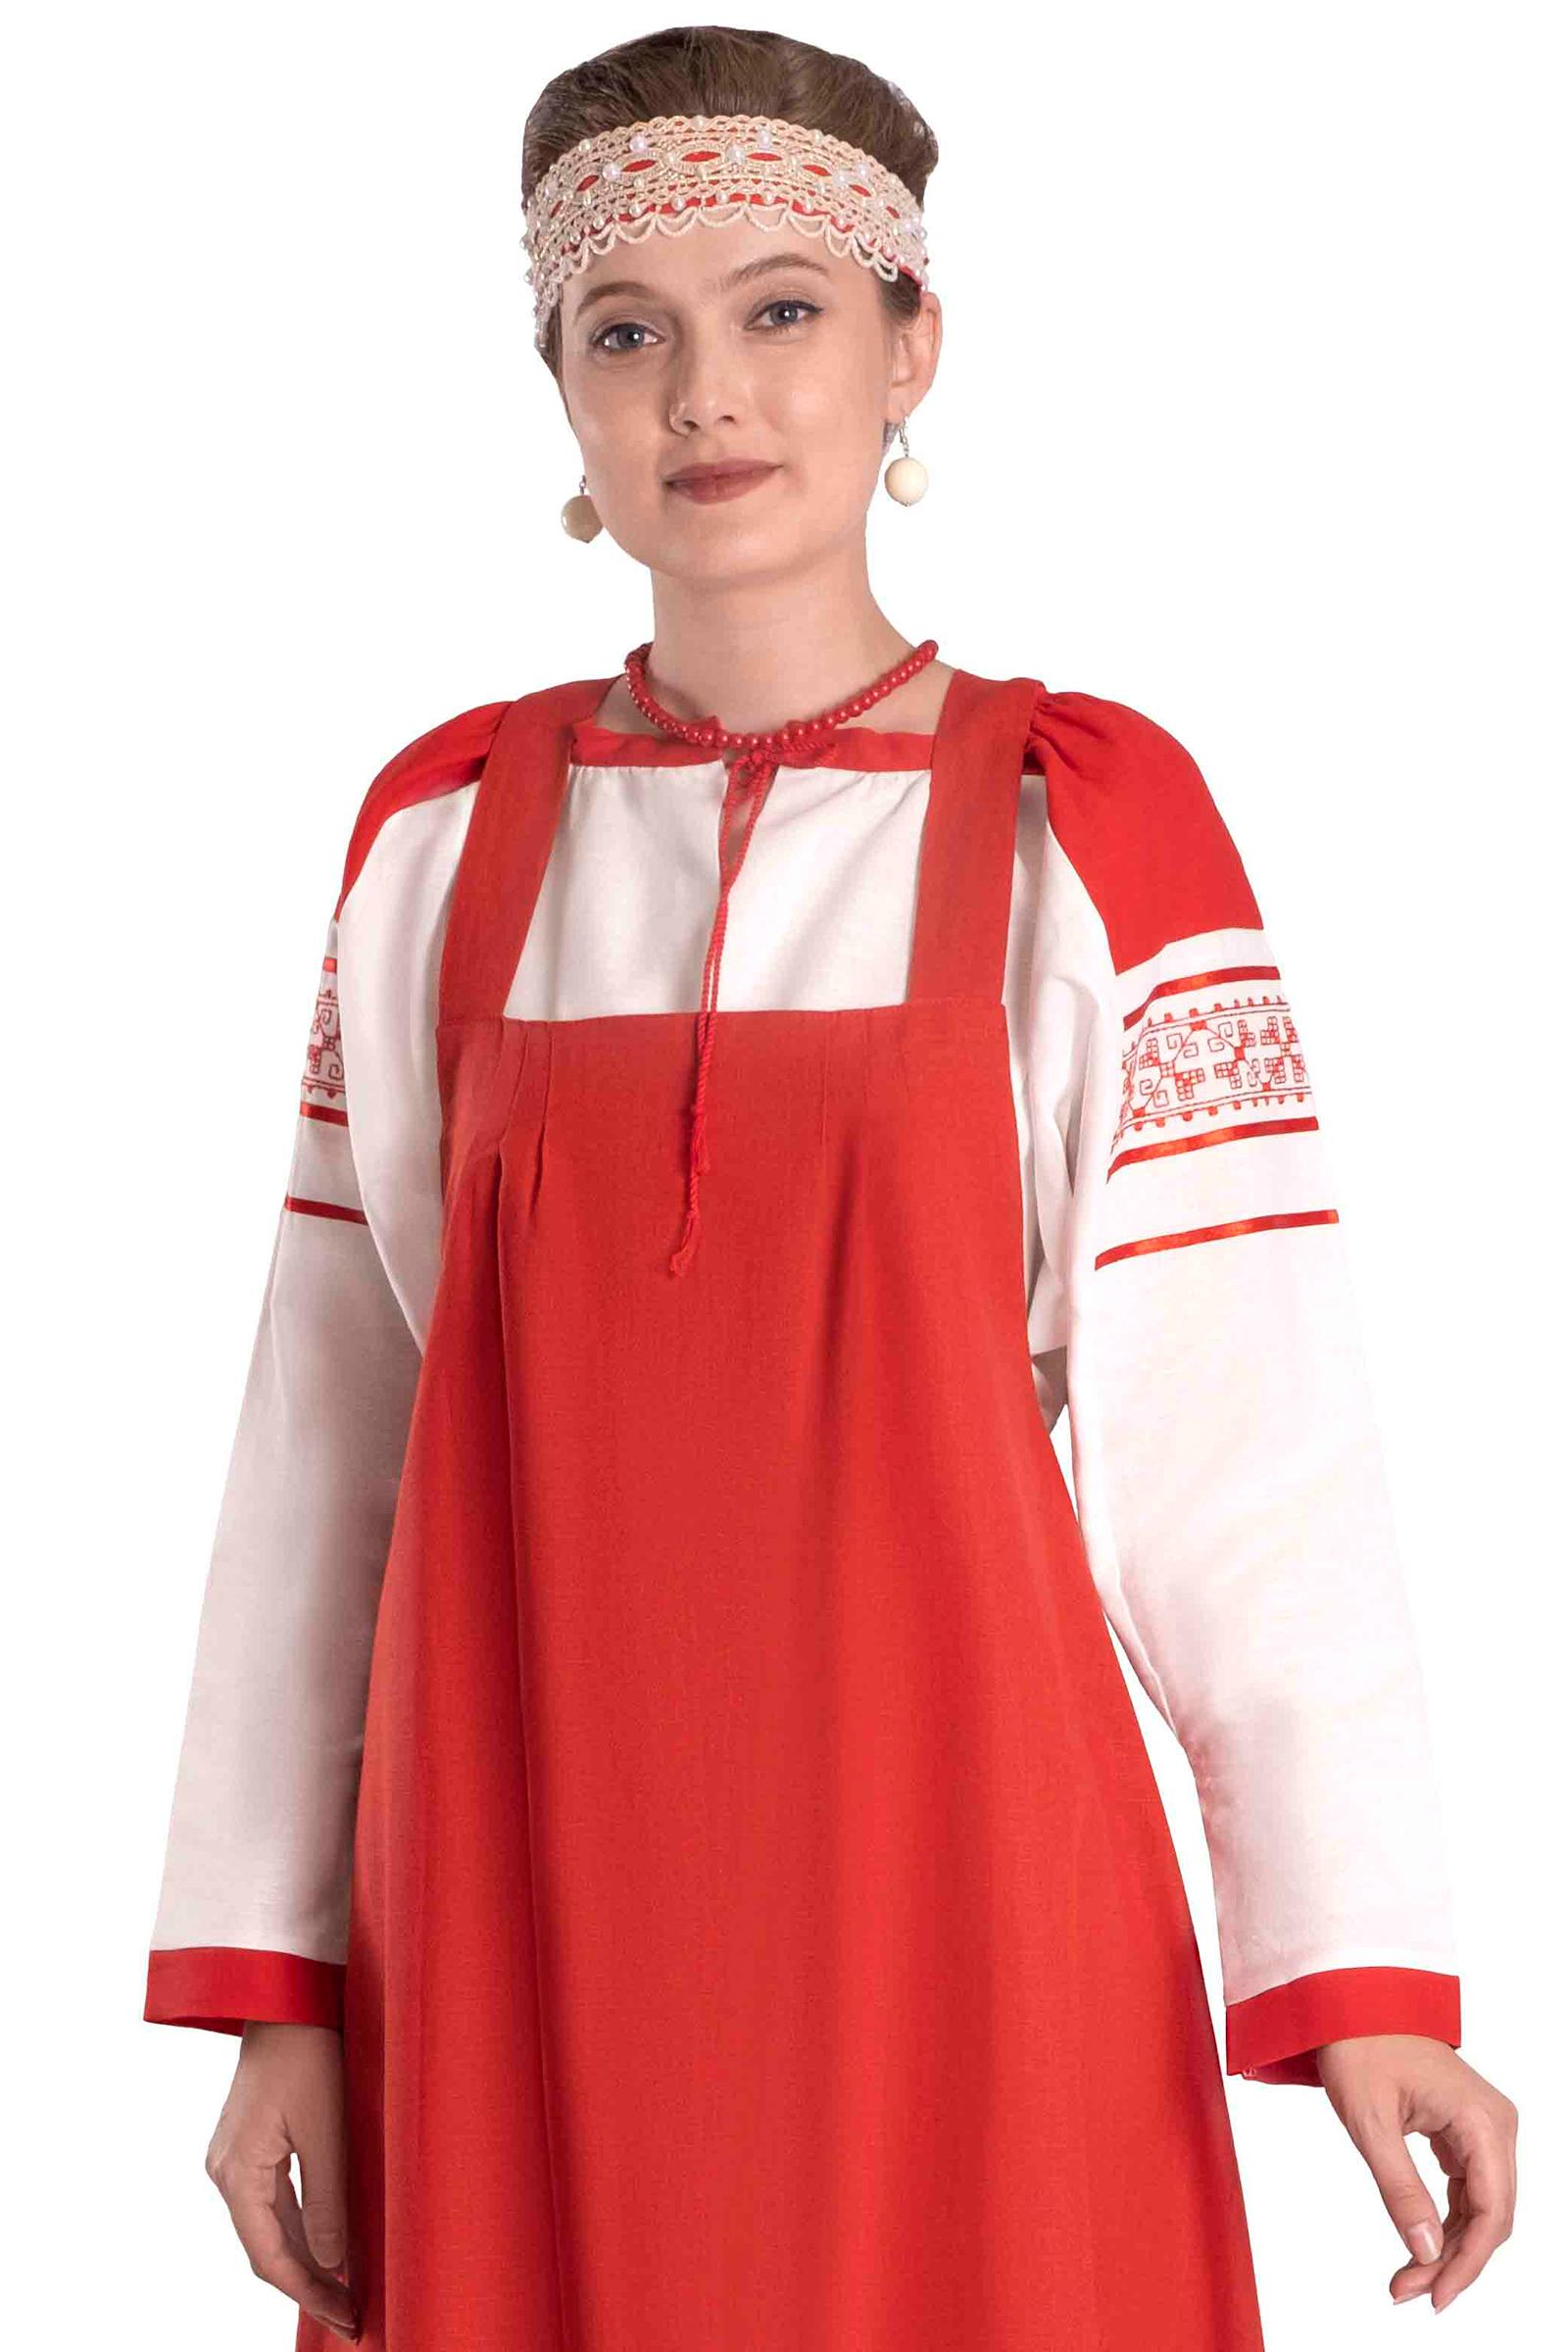 Рубахи русские народные женские